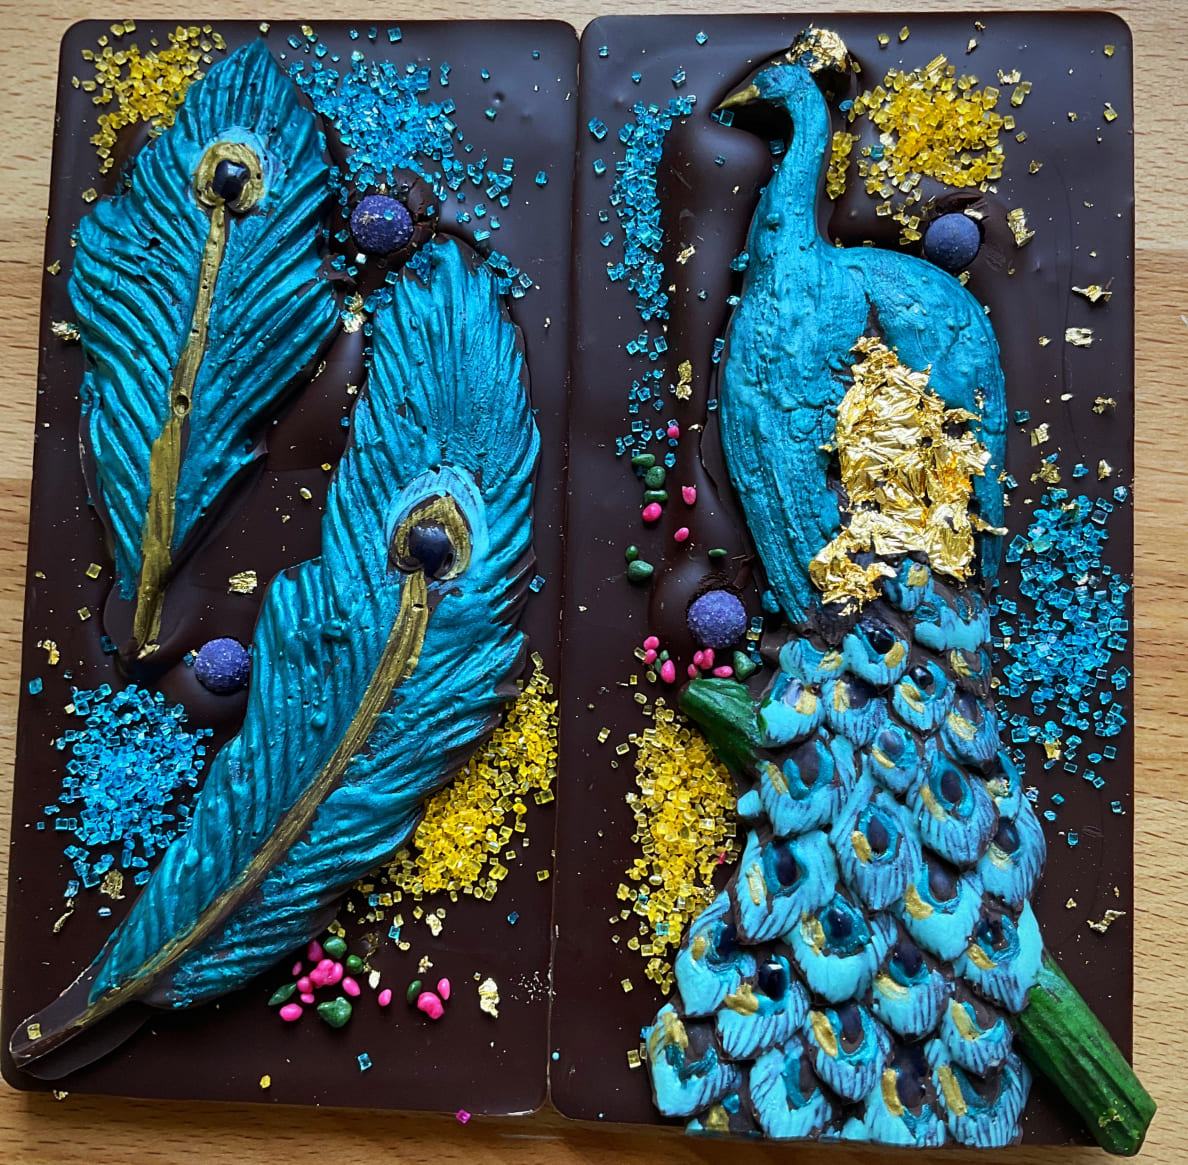 Deux tablettes de chocolat de Raven Rising Global-Indigenous Chocolates; l’une est ornée d’un paon bleu et doré et l’autre, de plumes de paon assorties